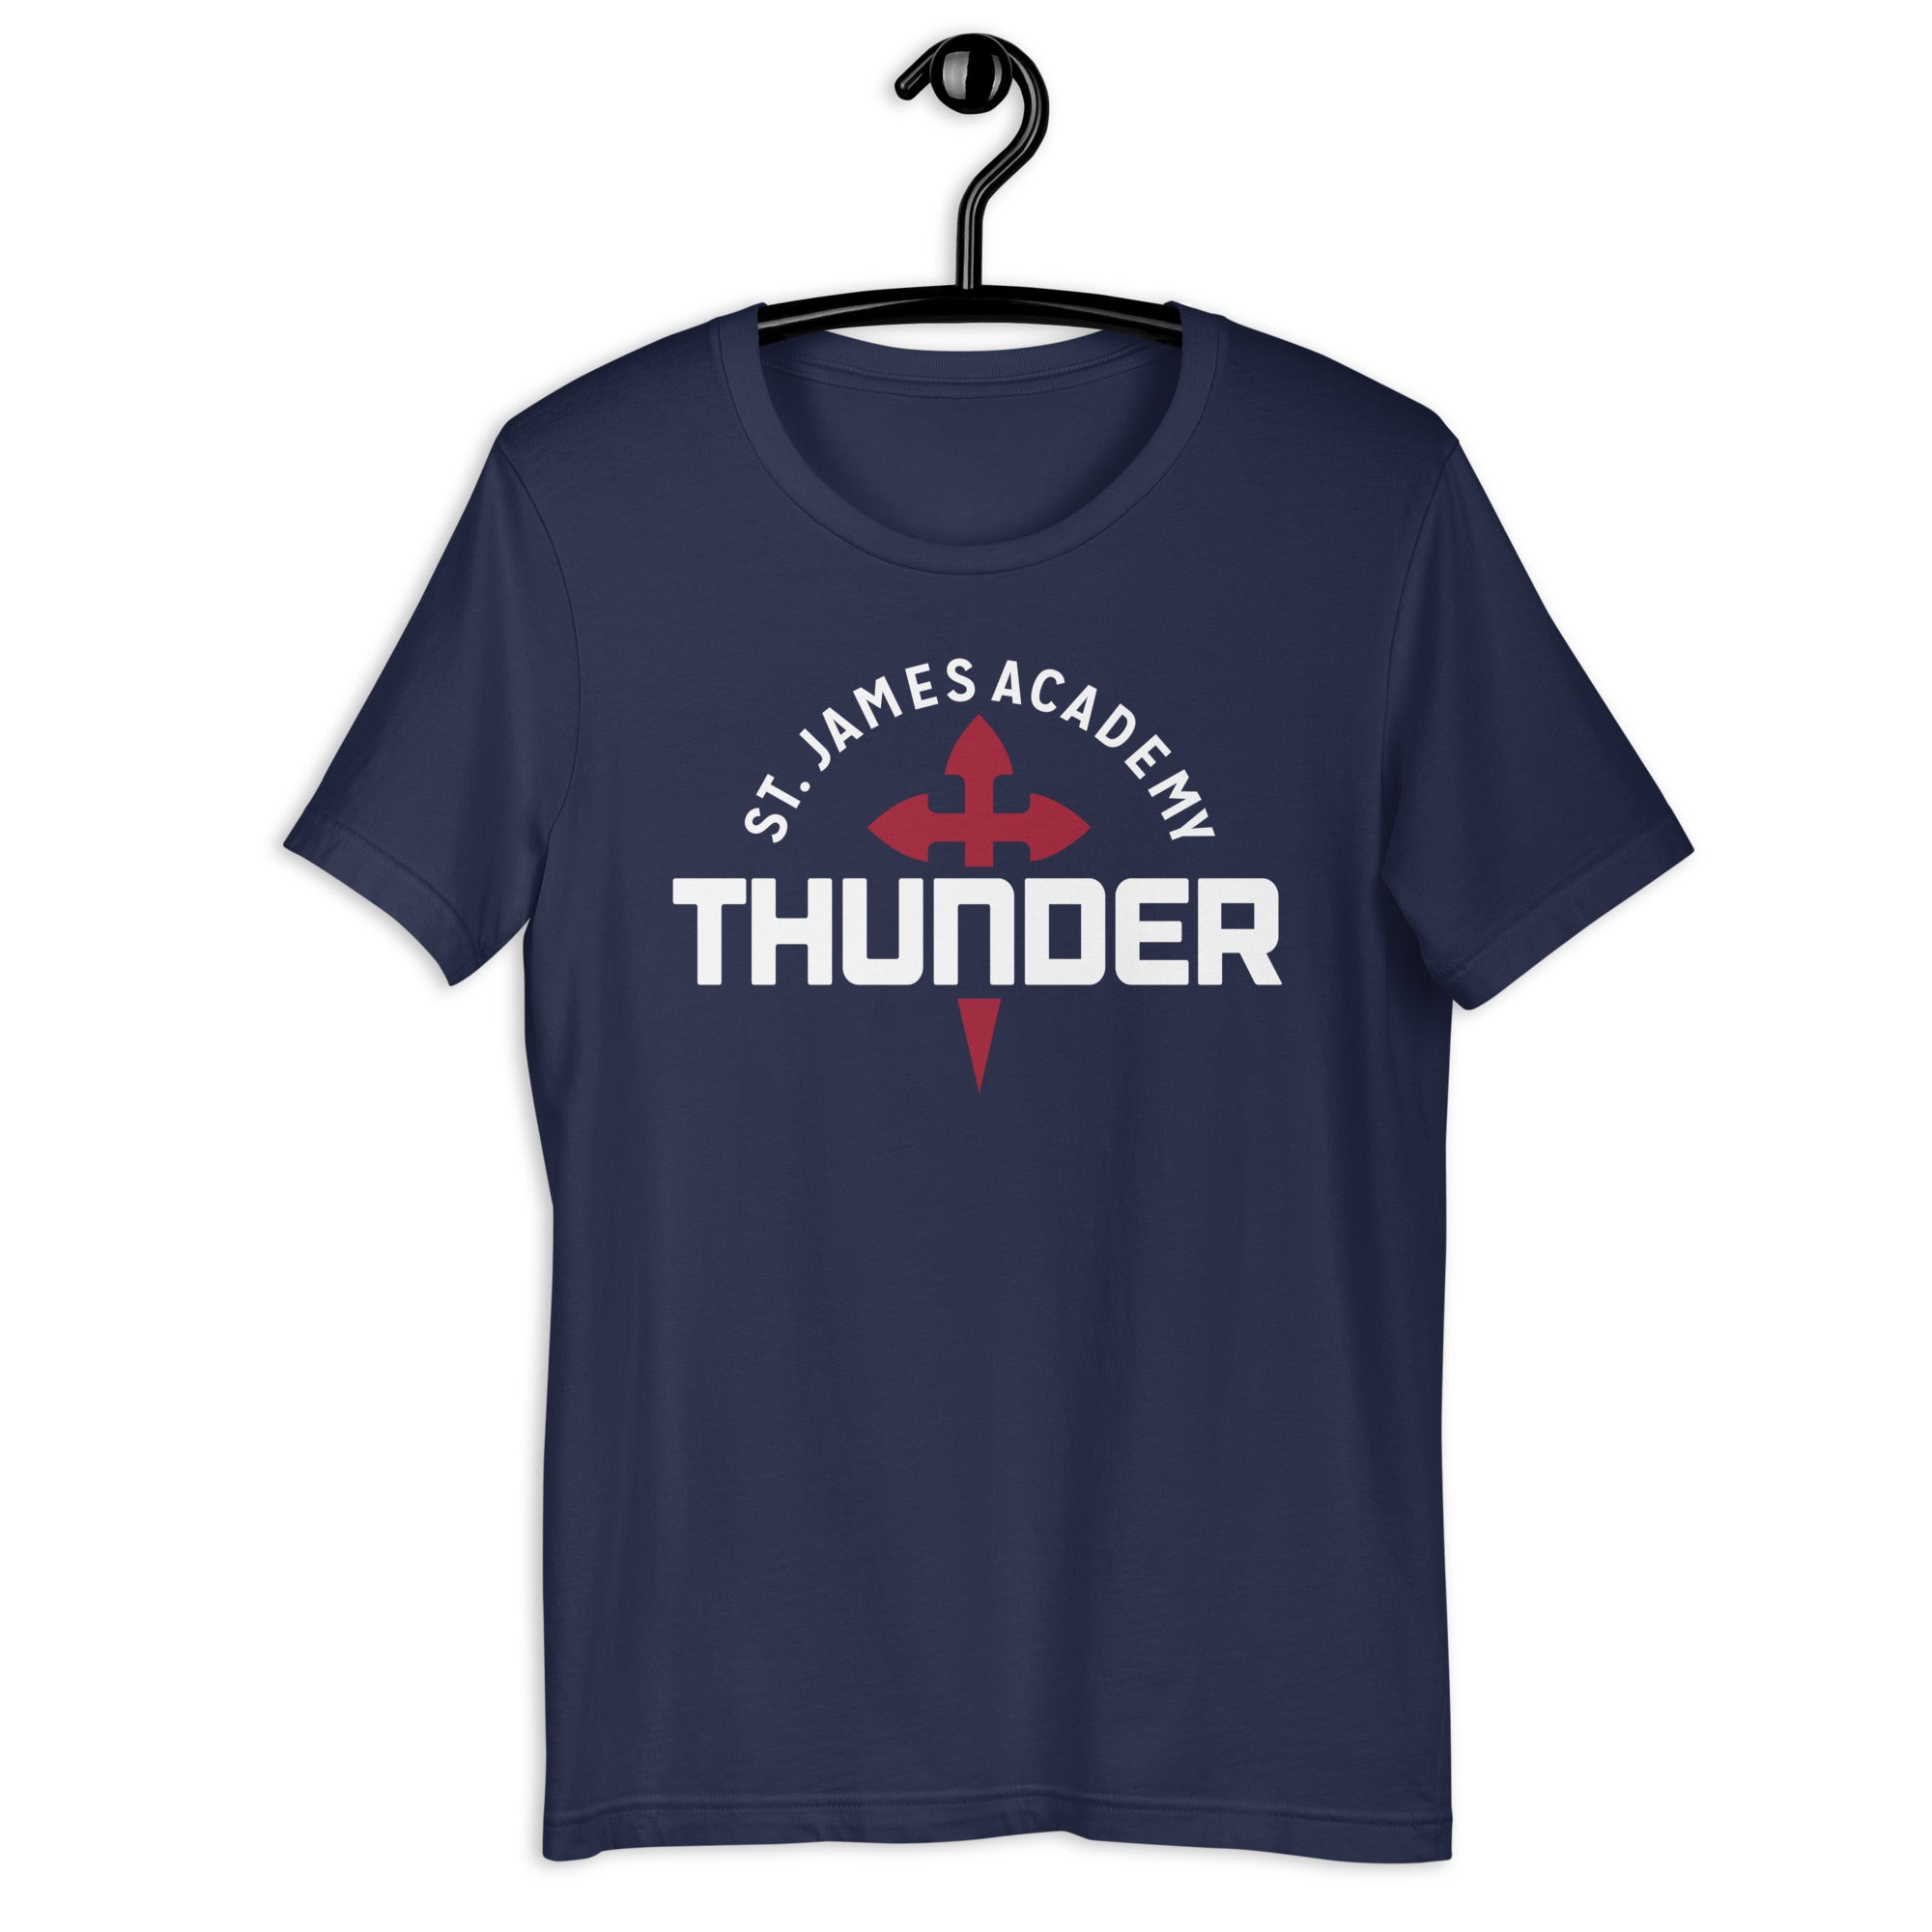 St. James Academy Thunder unisex soft t-shirt